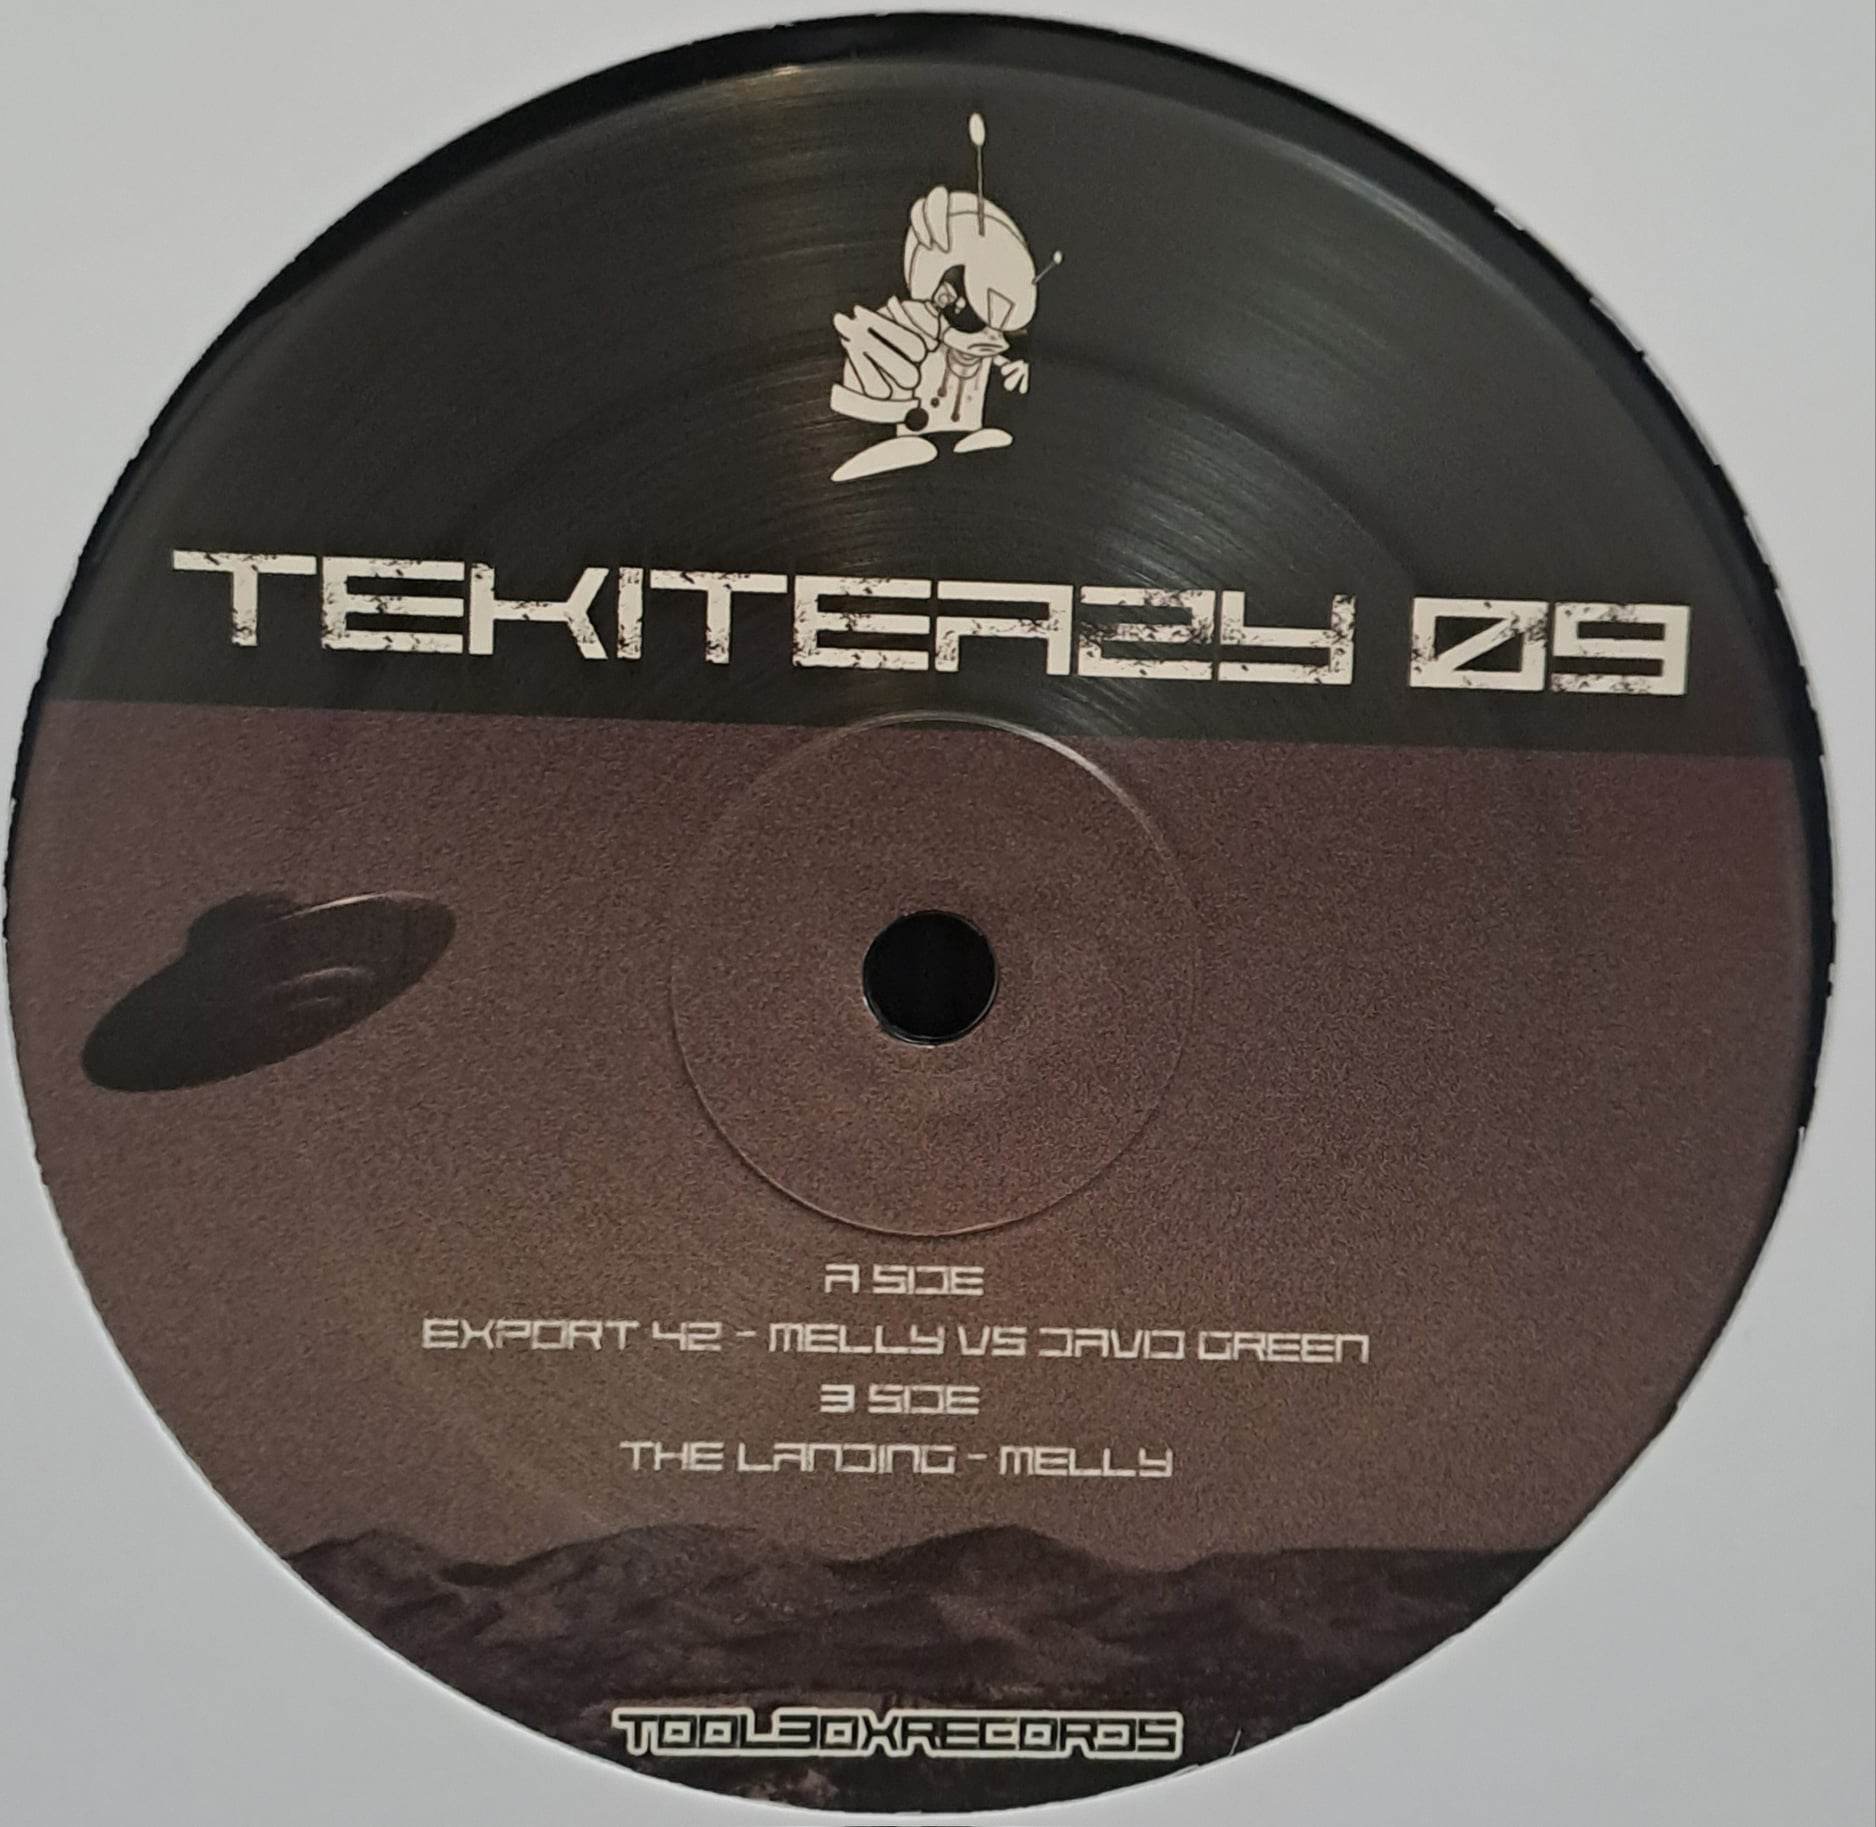 Tekiteazy 09 - vinyle tribecore